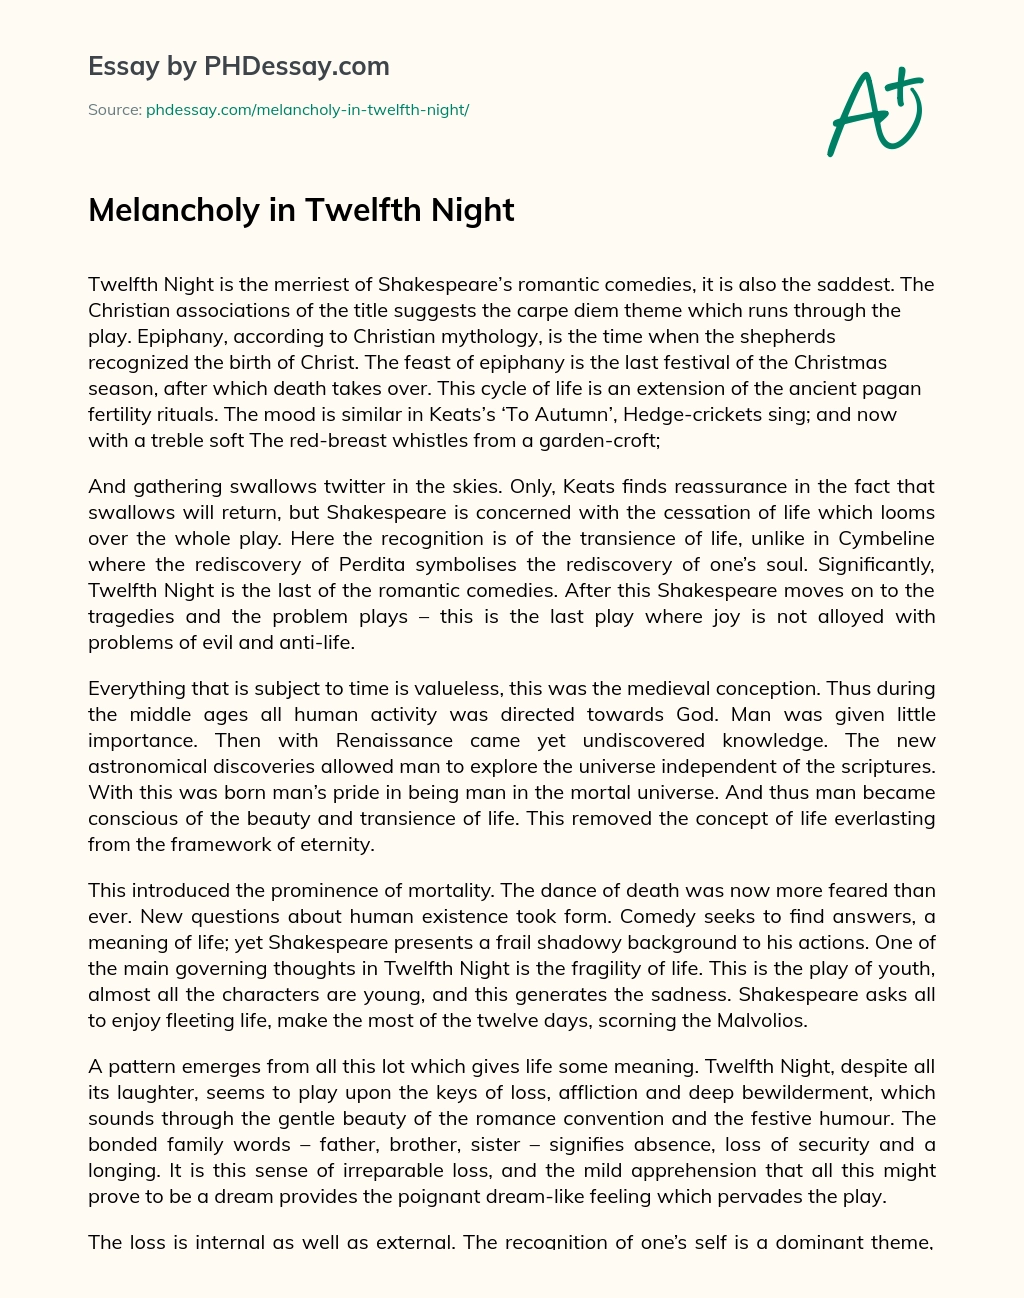 Melancholy in Twelfth Night essay